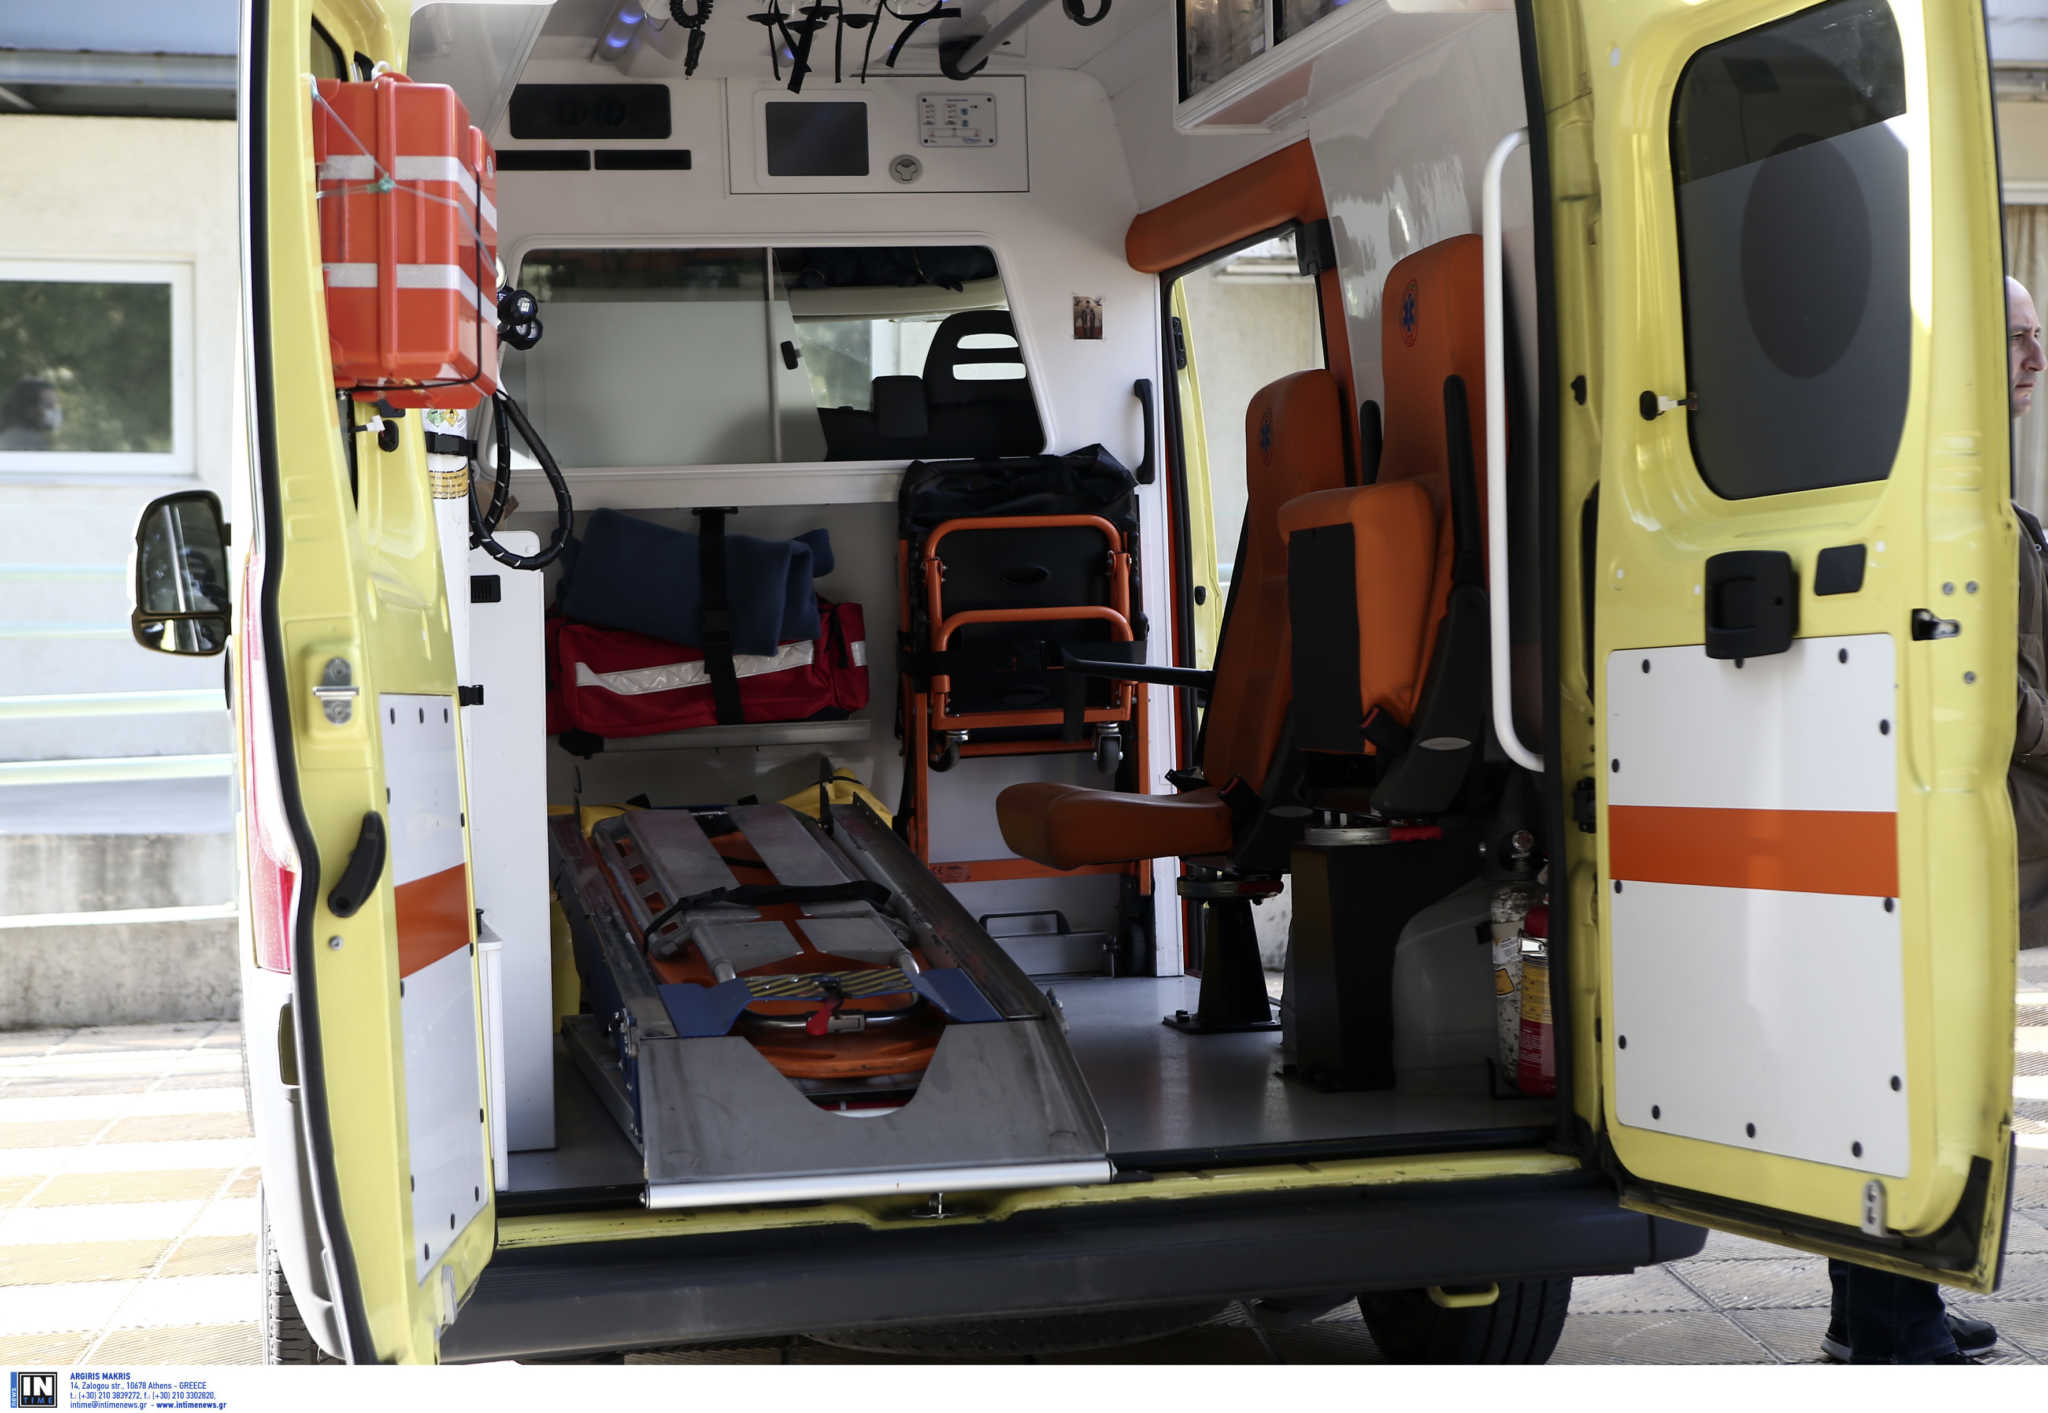 Εργαζόμενος στην Κρήτη τραυματίστηκε σε αρτοπαρασκευαστήριο  όταν “Πιάστηκε” το χέρι του σε μηχάνημα